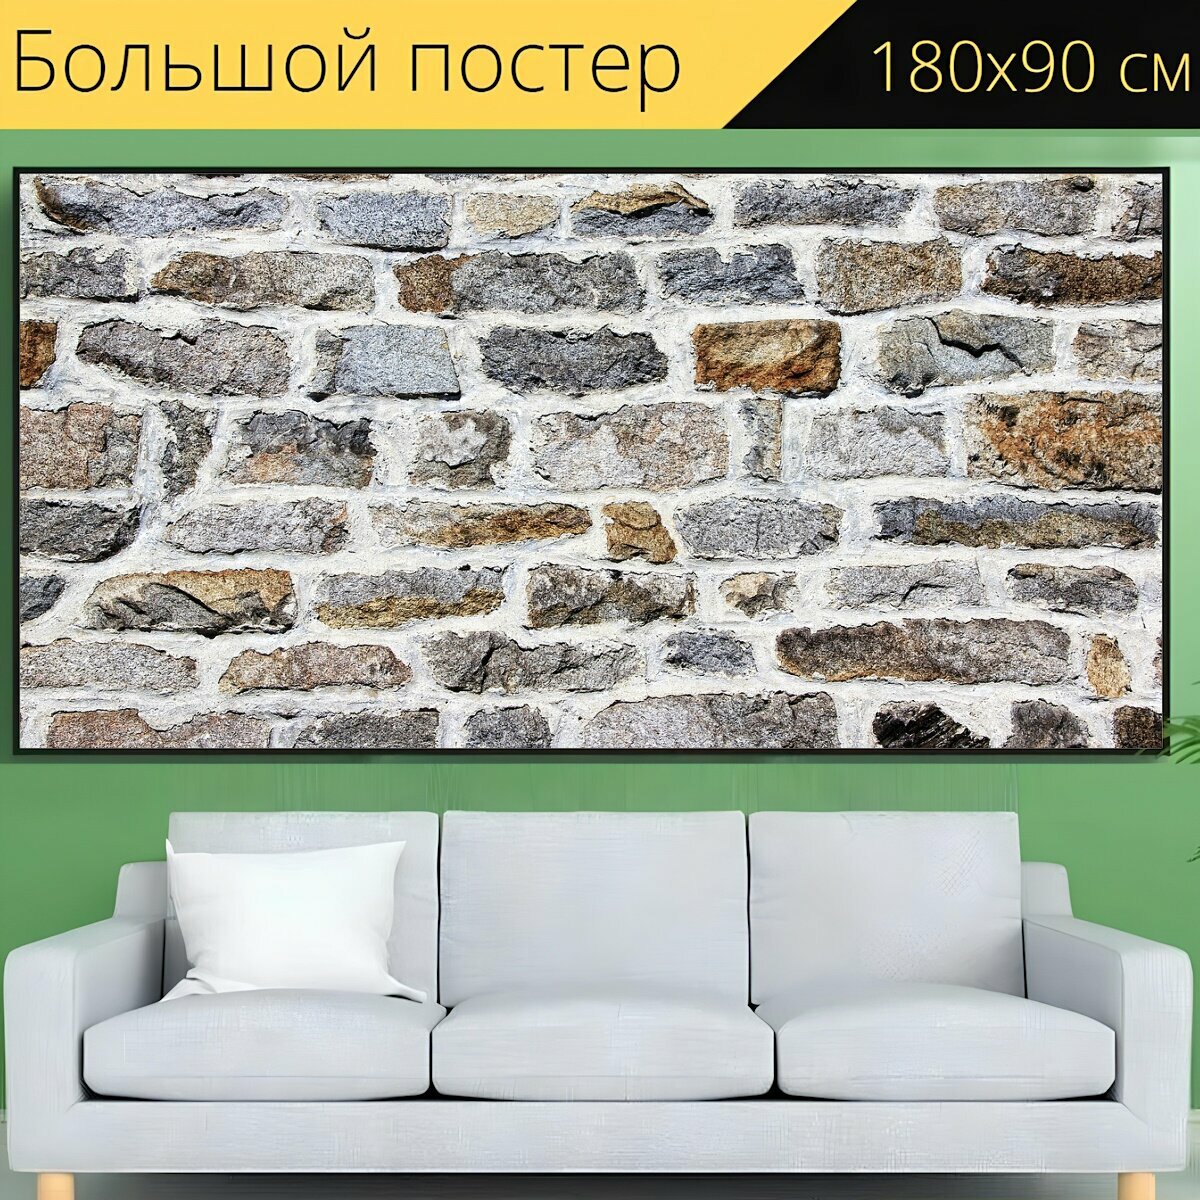 Большой постер "Стена, каменная стена, текстура" 180 x 90 см. для интерьера